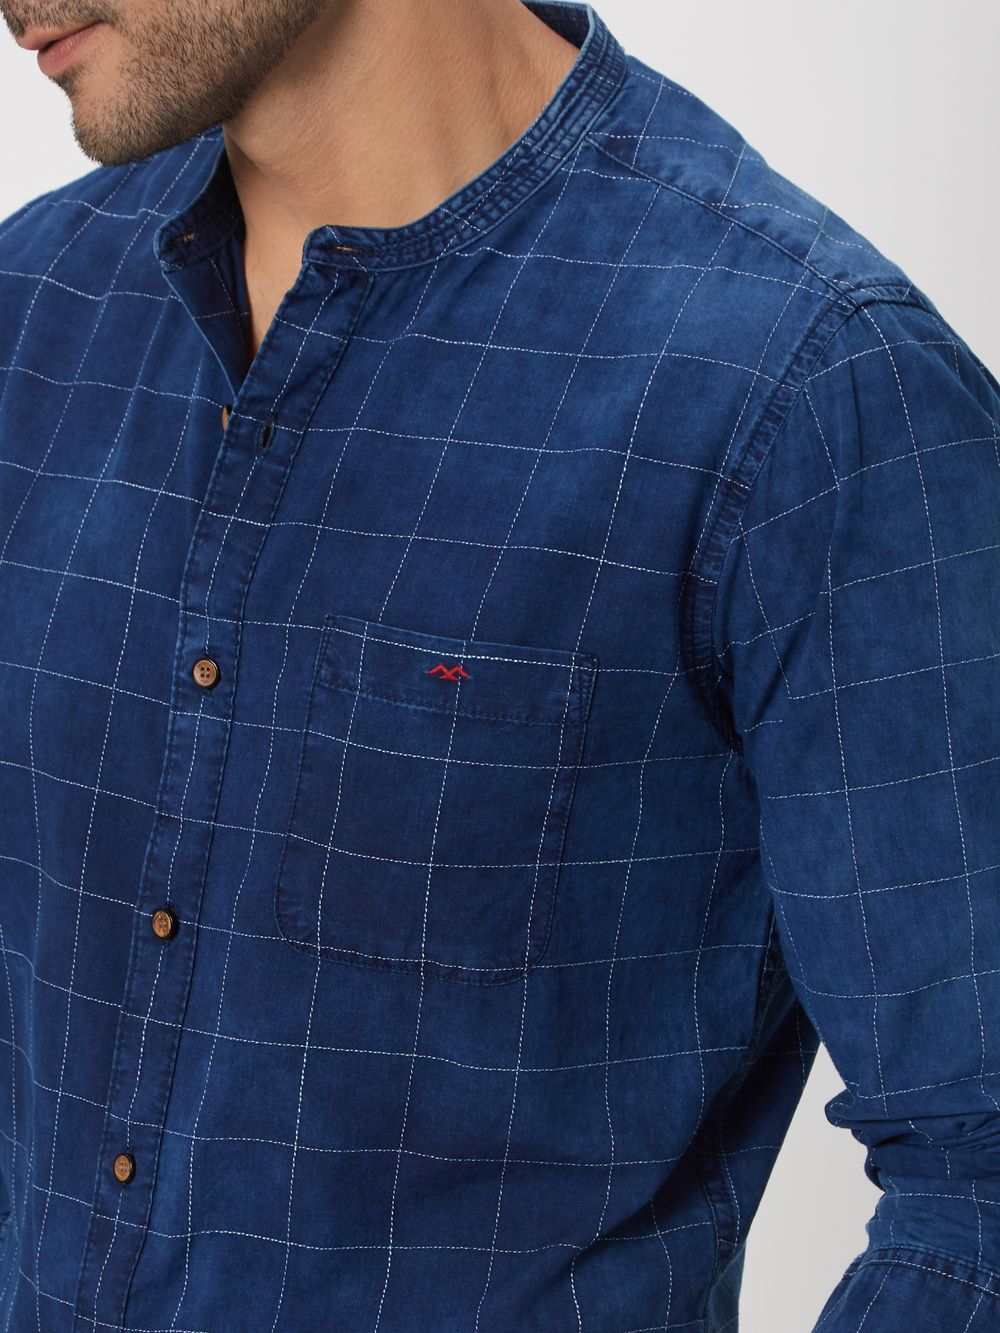 Deep Indigo Blue & White Stitch Check Denim Shirt